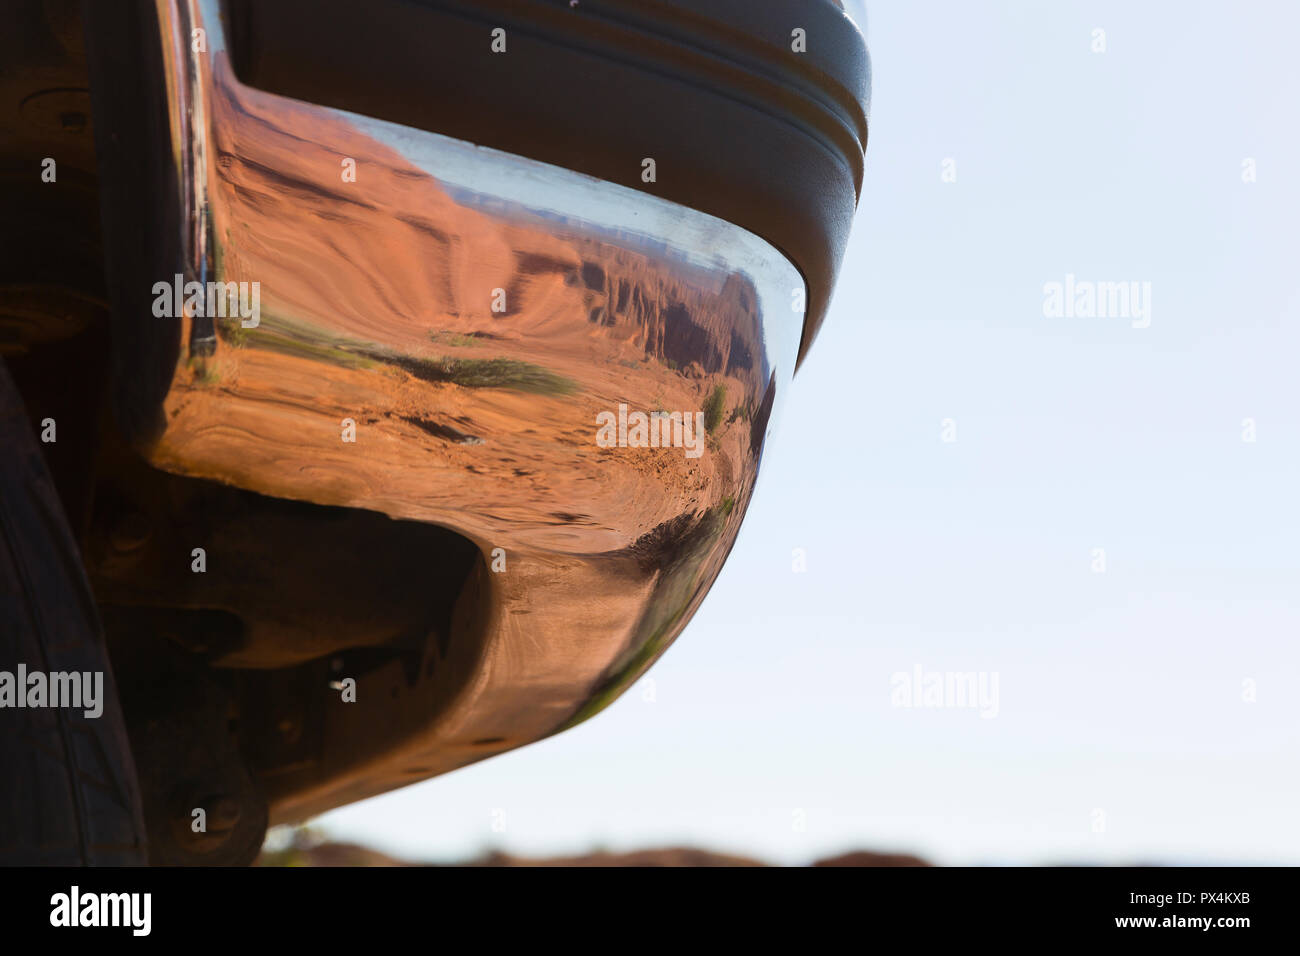 Curva a ferro di cavallo, Pagina, AZ, Stati Uniti d'America. Il paraurti cromato di un pickup riflette scenario desertico. Foto Stock